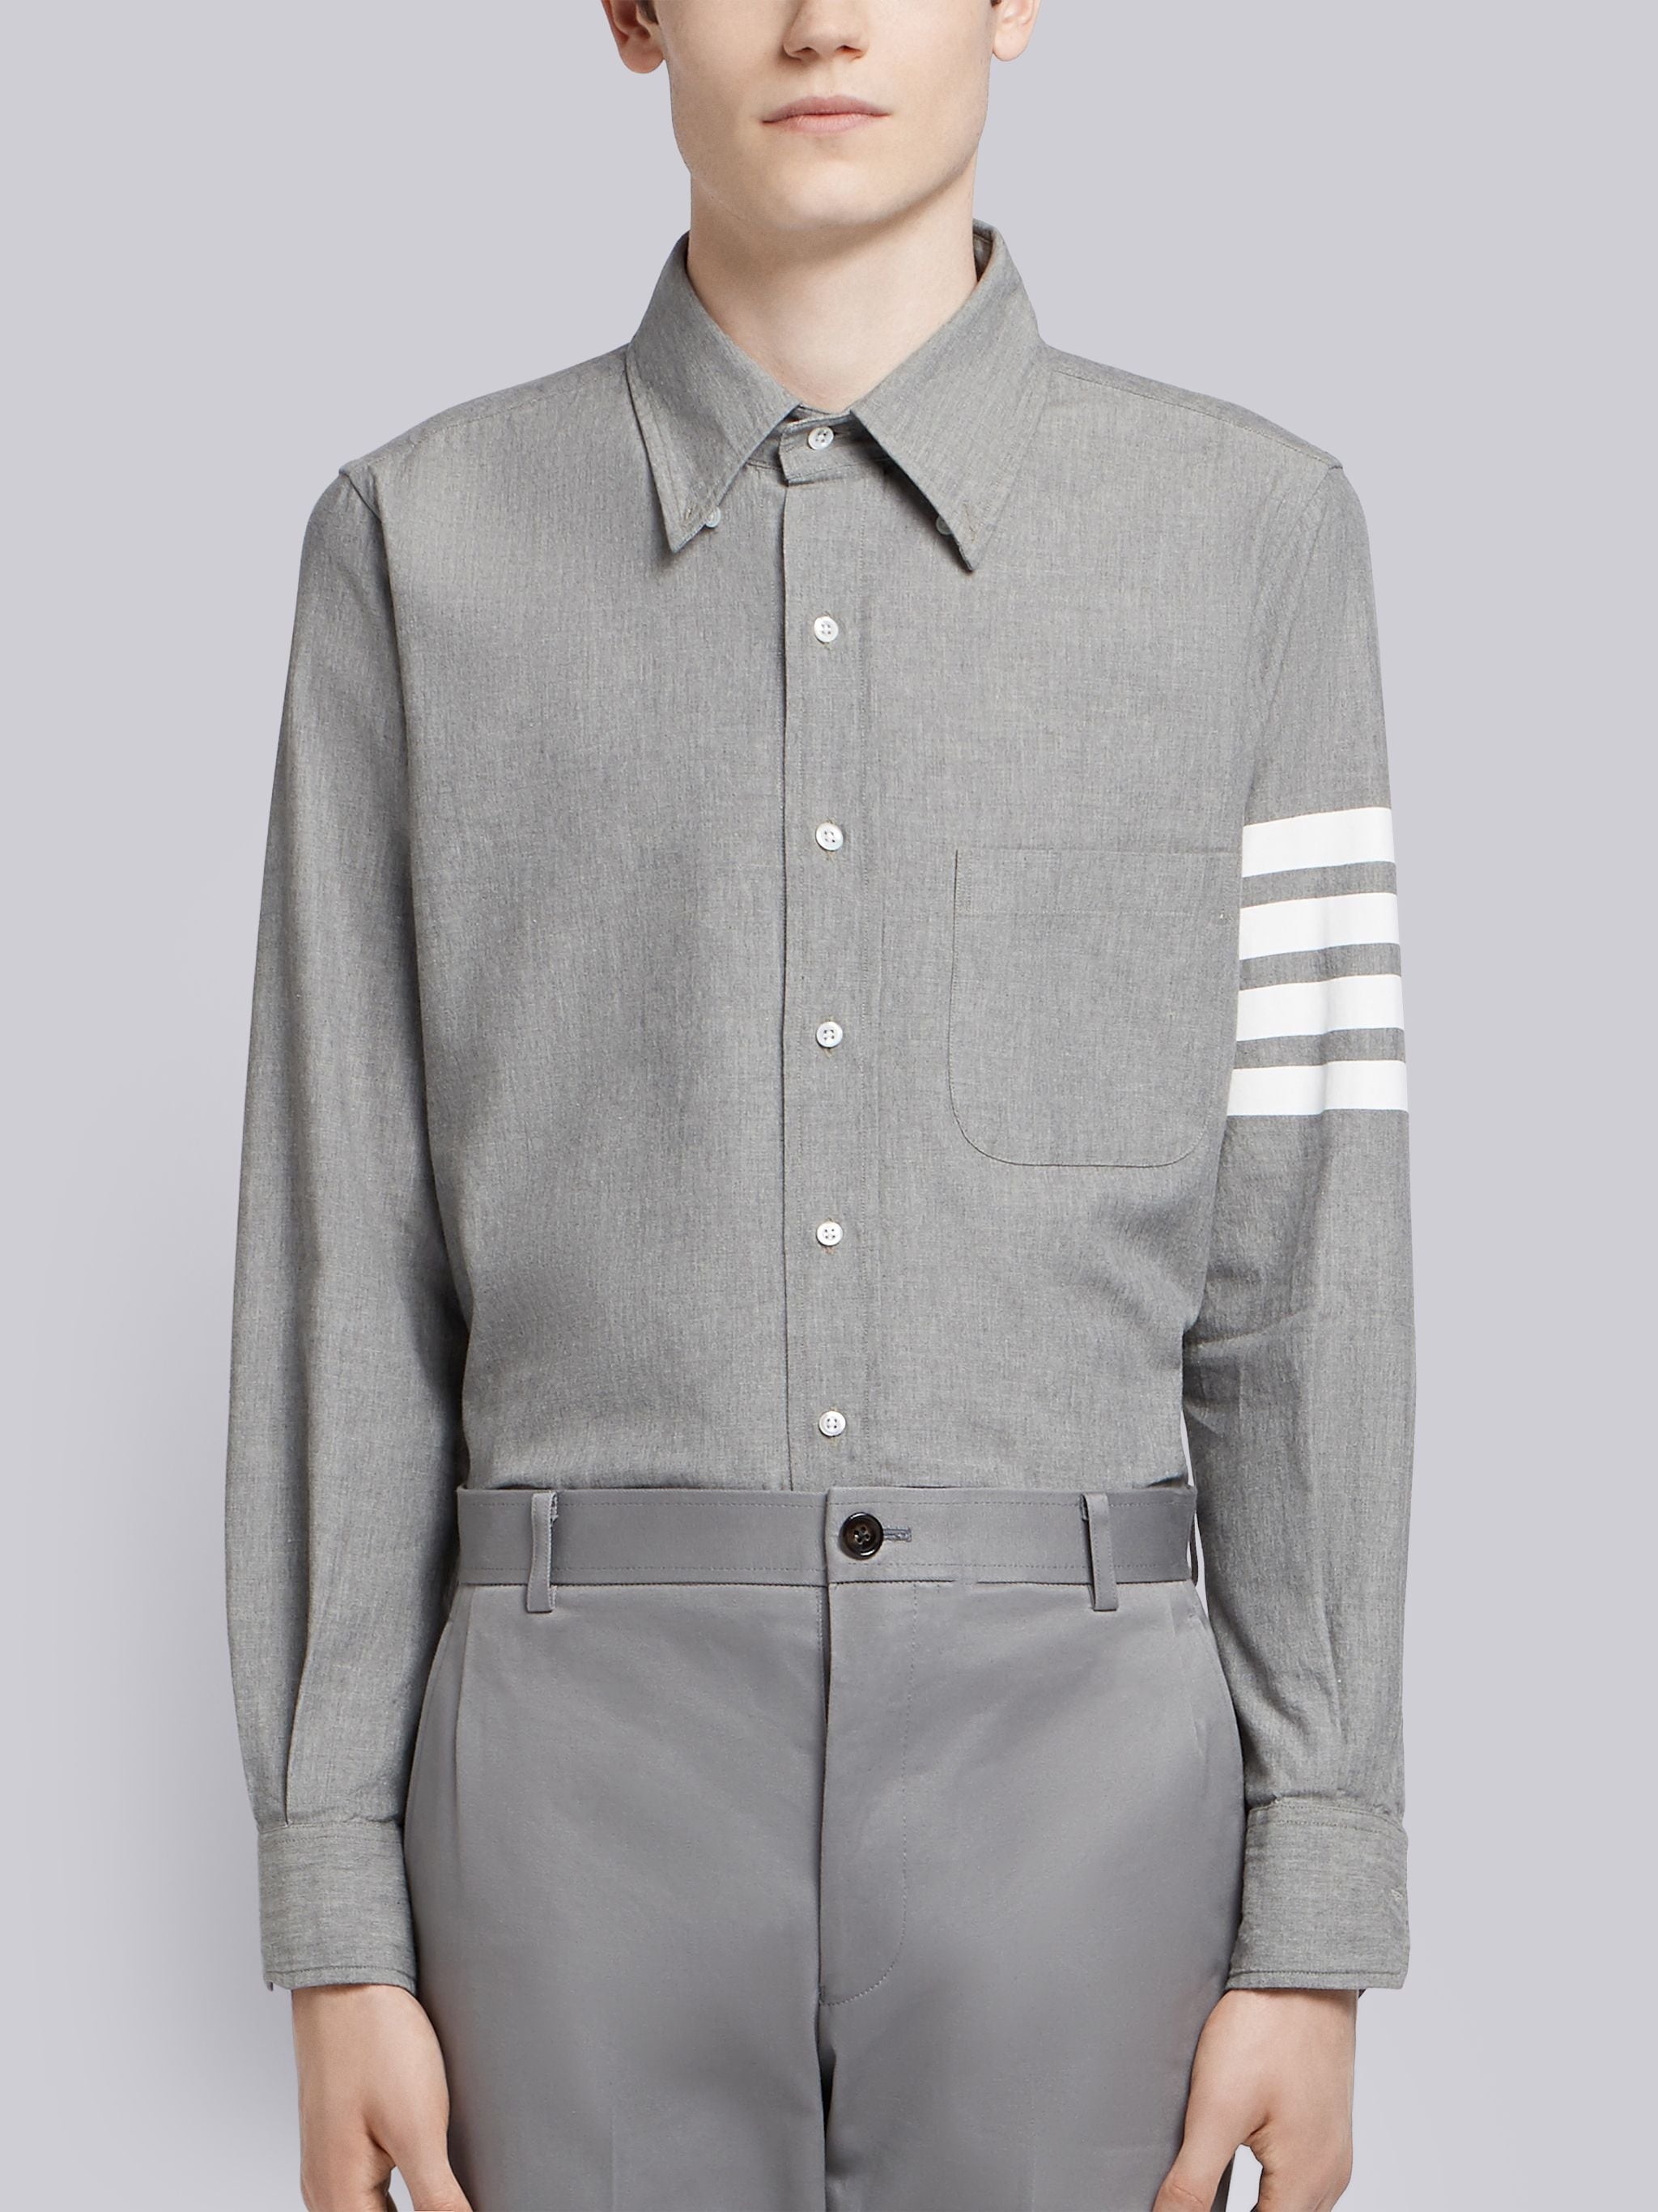 Medium Grey Chambray Printed 4-bar Nametag Straight Fit Shirt - 1